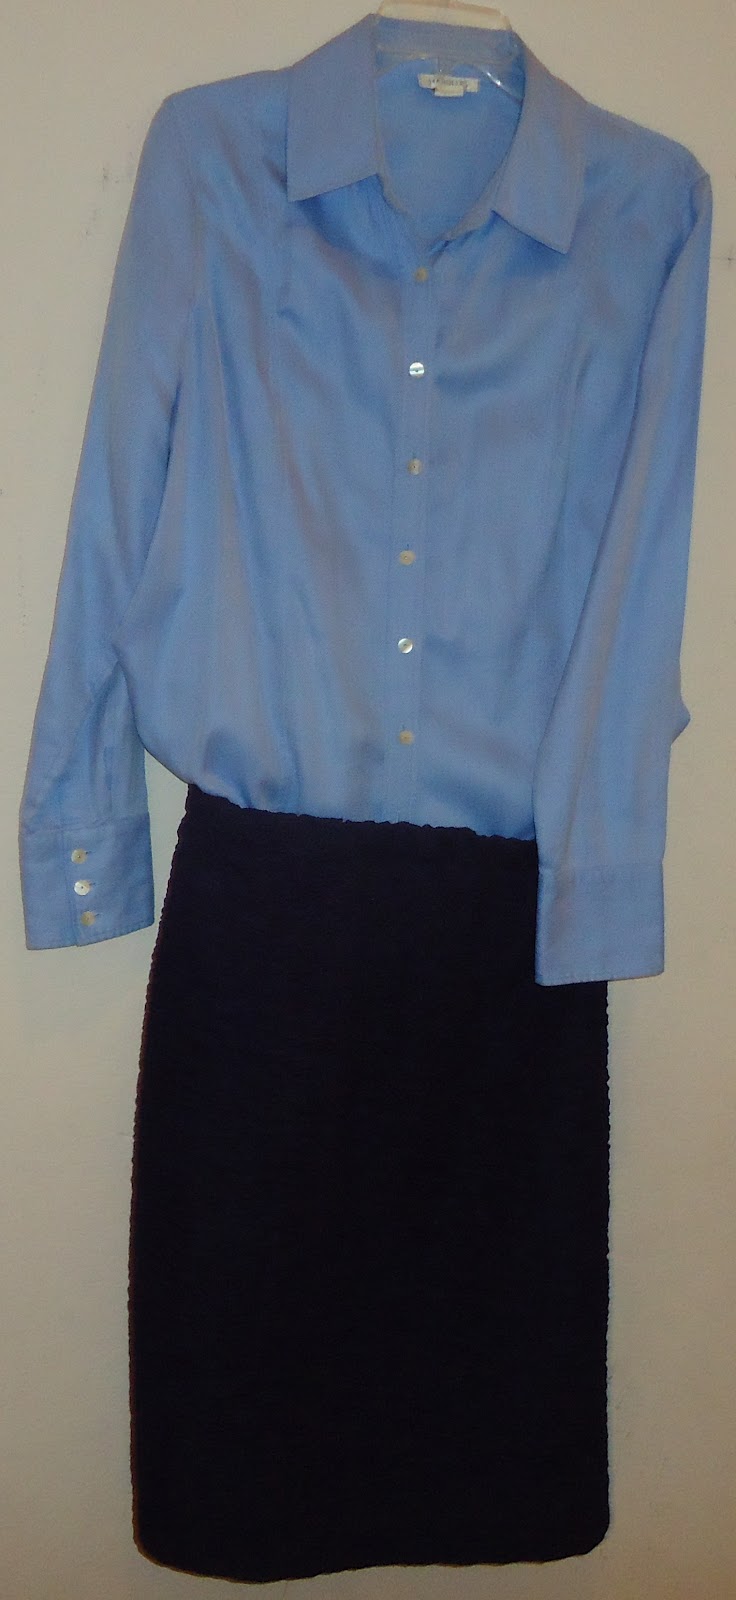 The Leather Skirt: September 2012